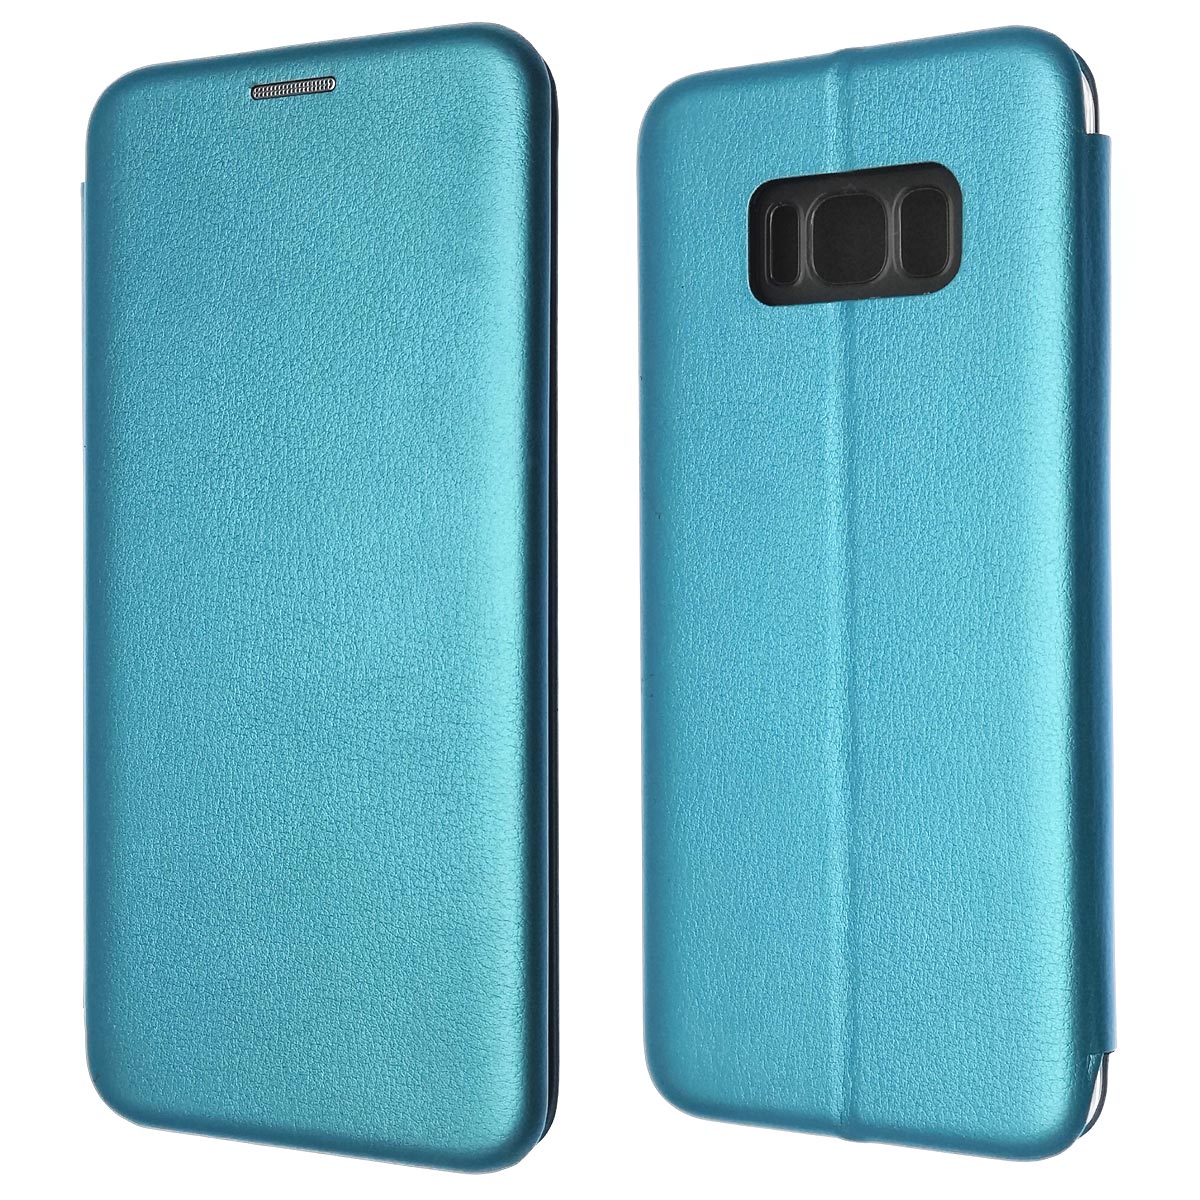 Чехол книжка для SAMSUNG Galaxy S8 Plus (SM-G955), экокожа, визитница, цвет голубой.